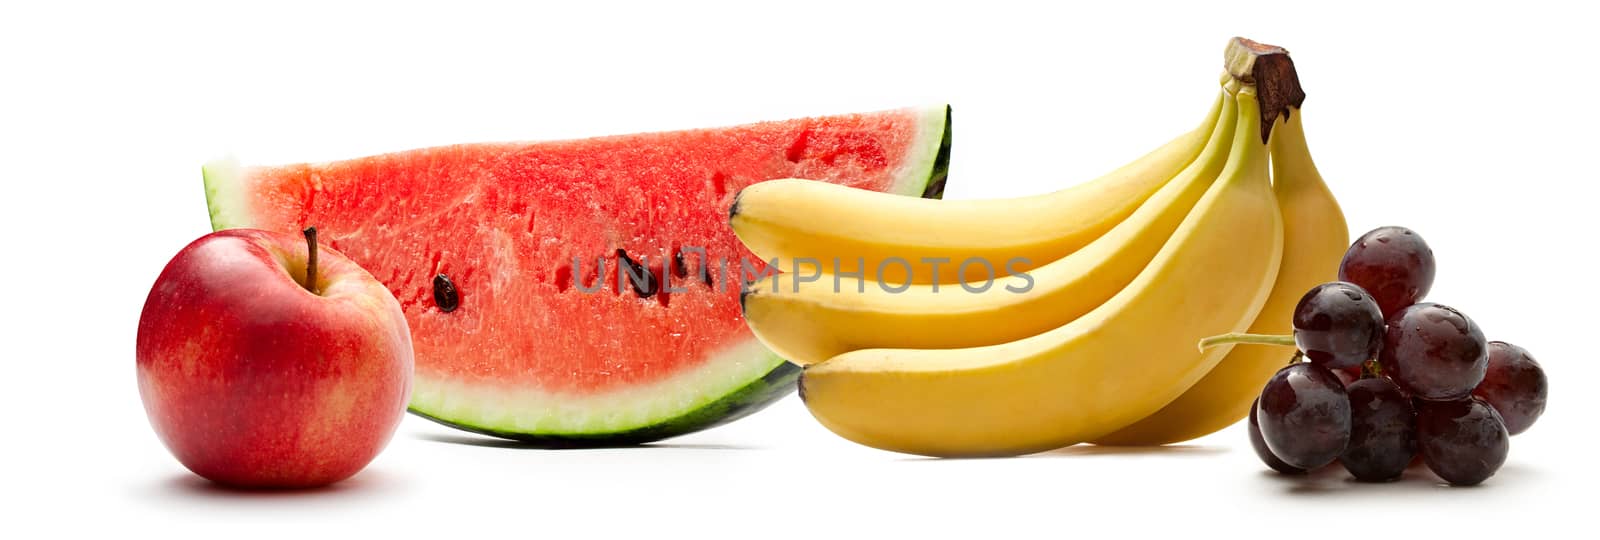 Watermelon, bananas. apple and grapes by Garsya